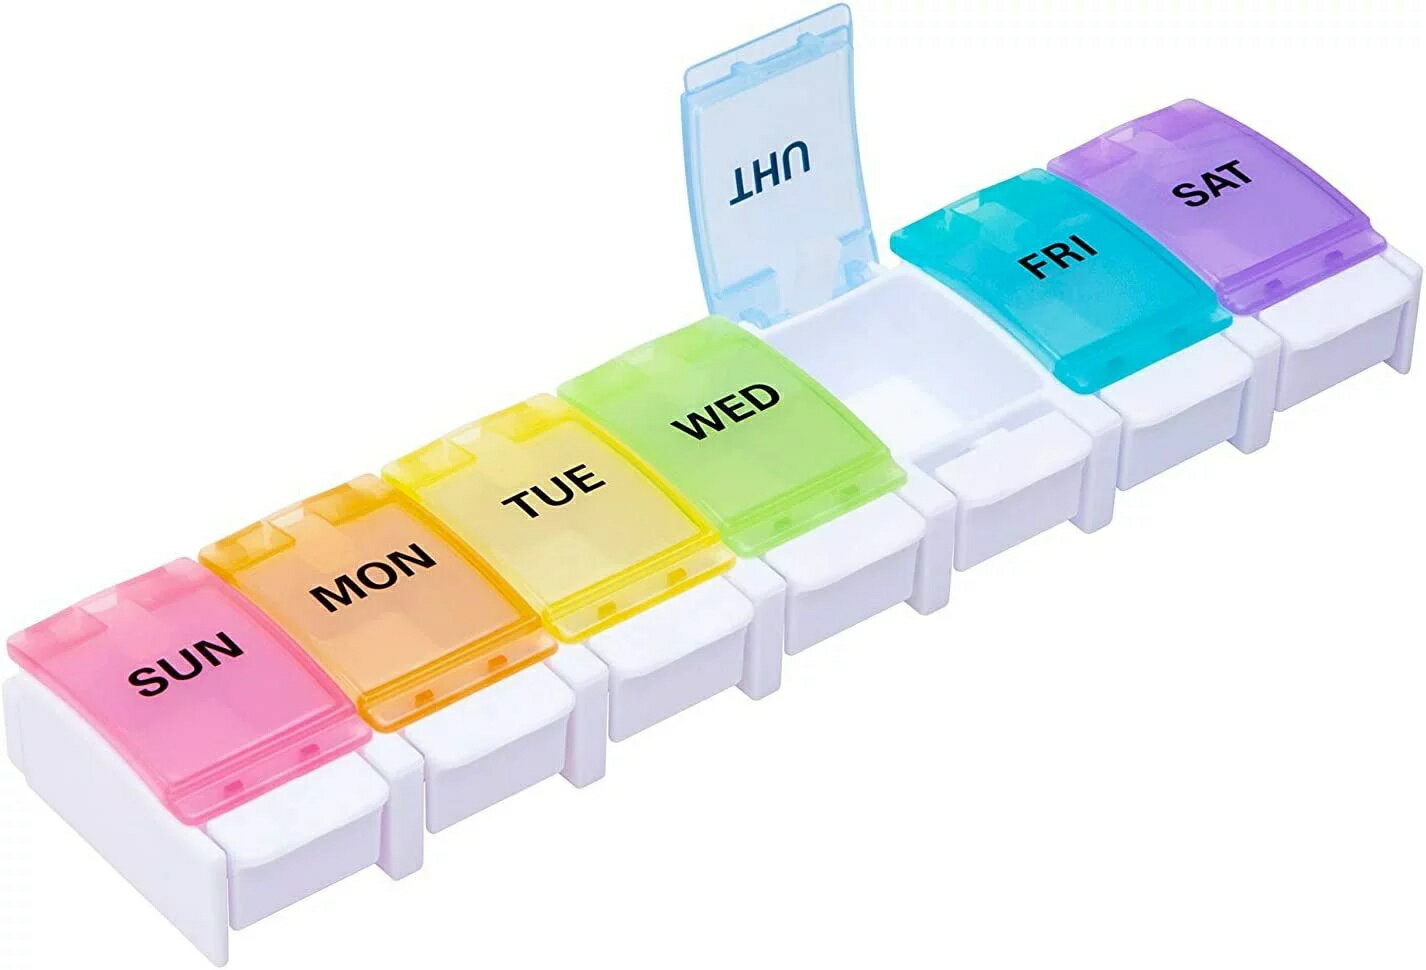 ピルケース 薬ケース 1週間 1日1回 習慣薬箱 薬入れ コンパクト プッシュ (1日1回)